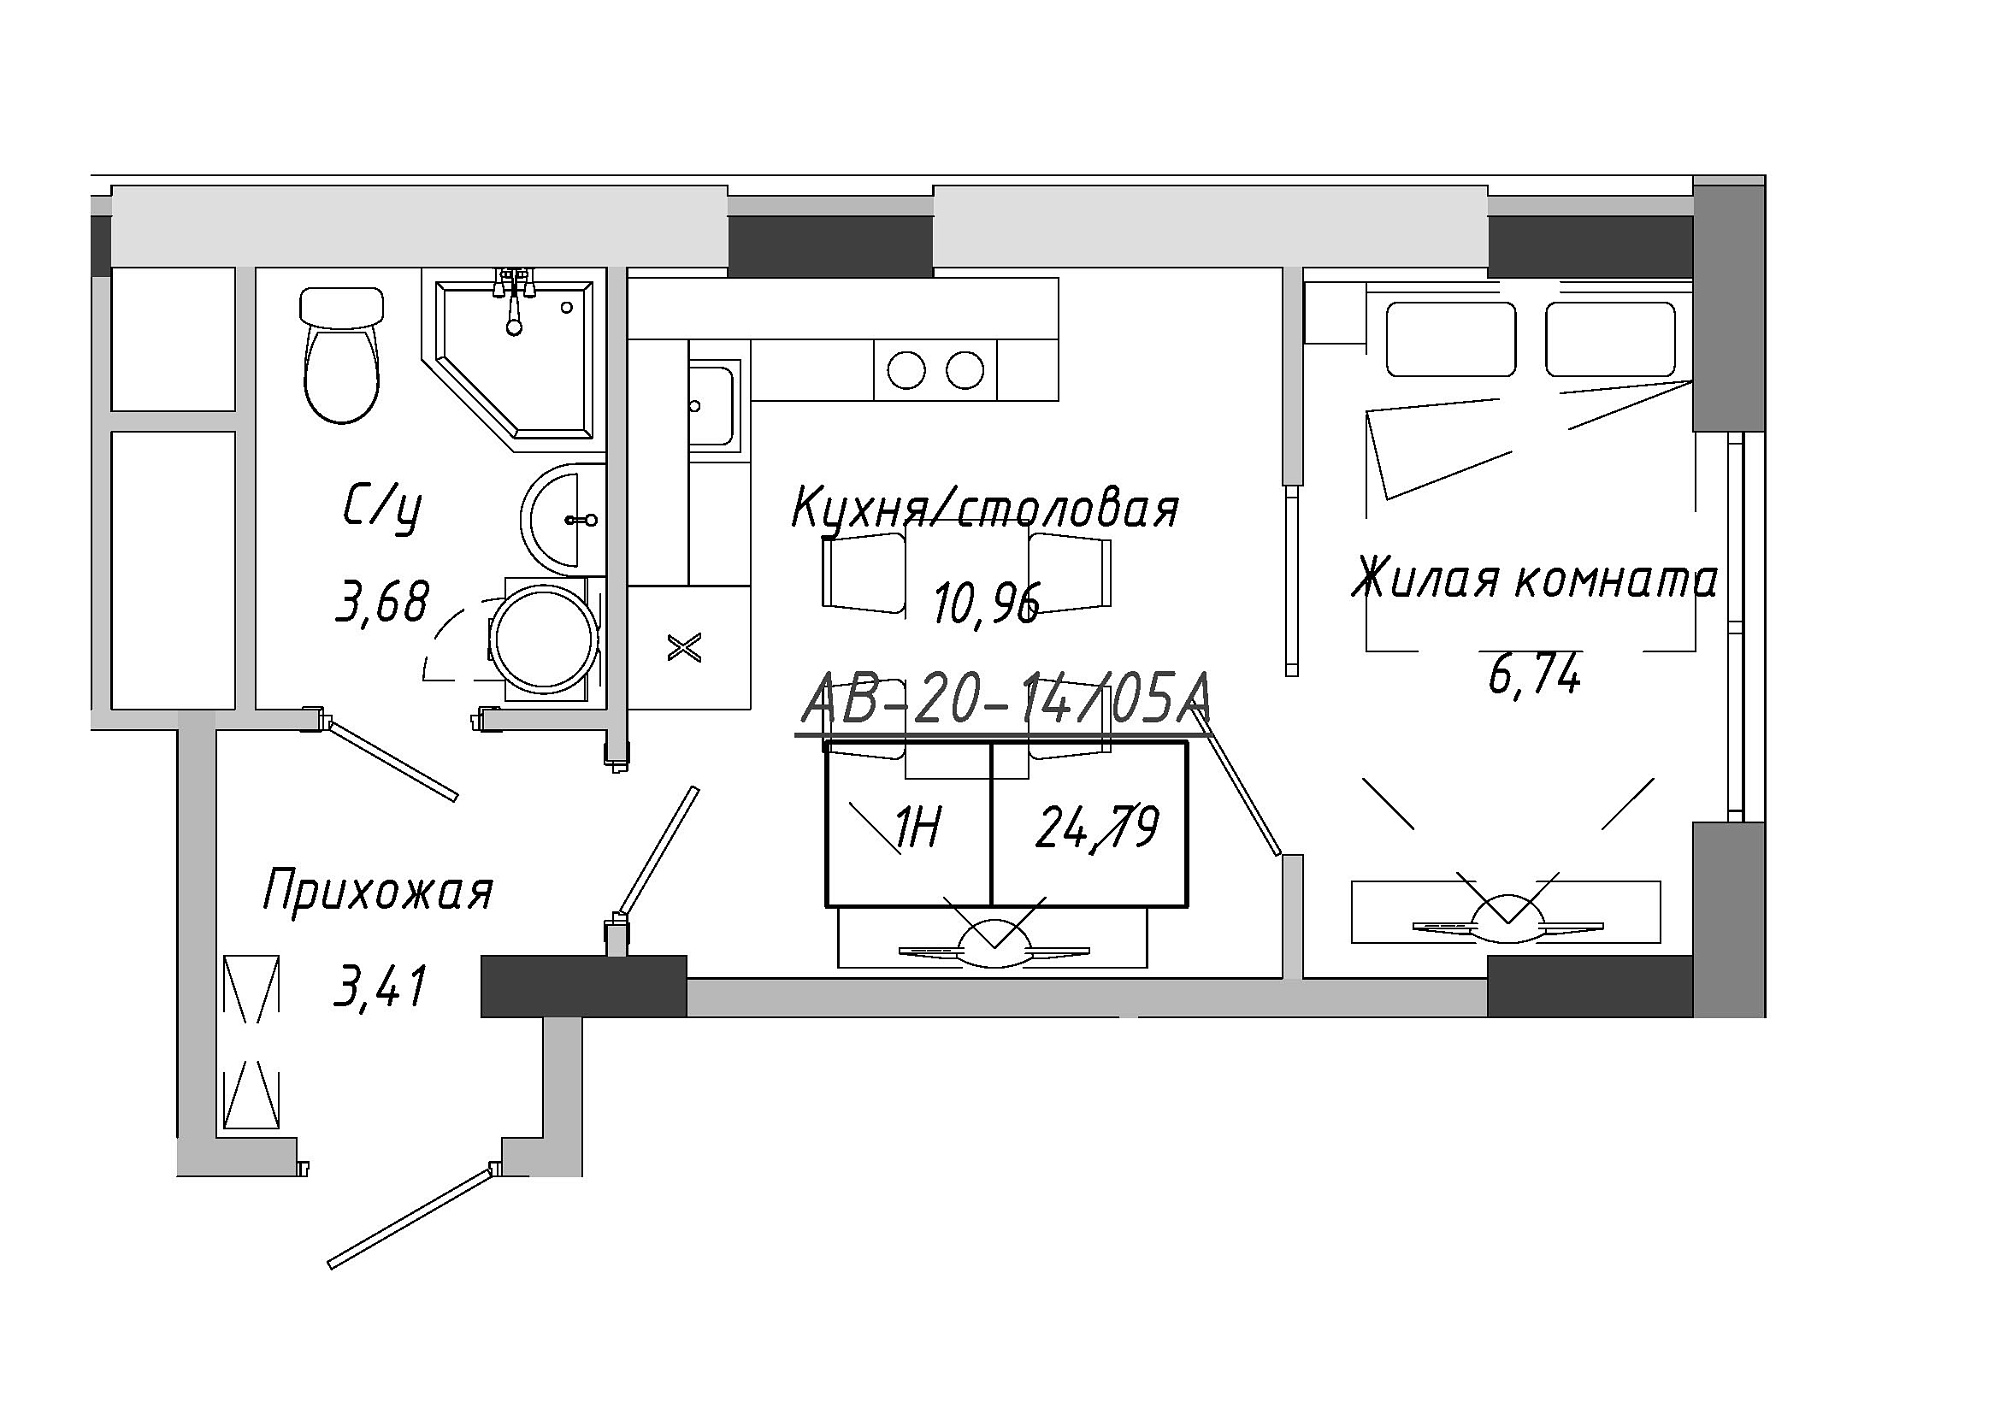 Планування 1-к квартира площею 24.79м2, AB-20-14/0105a.